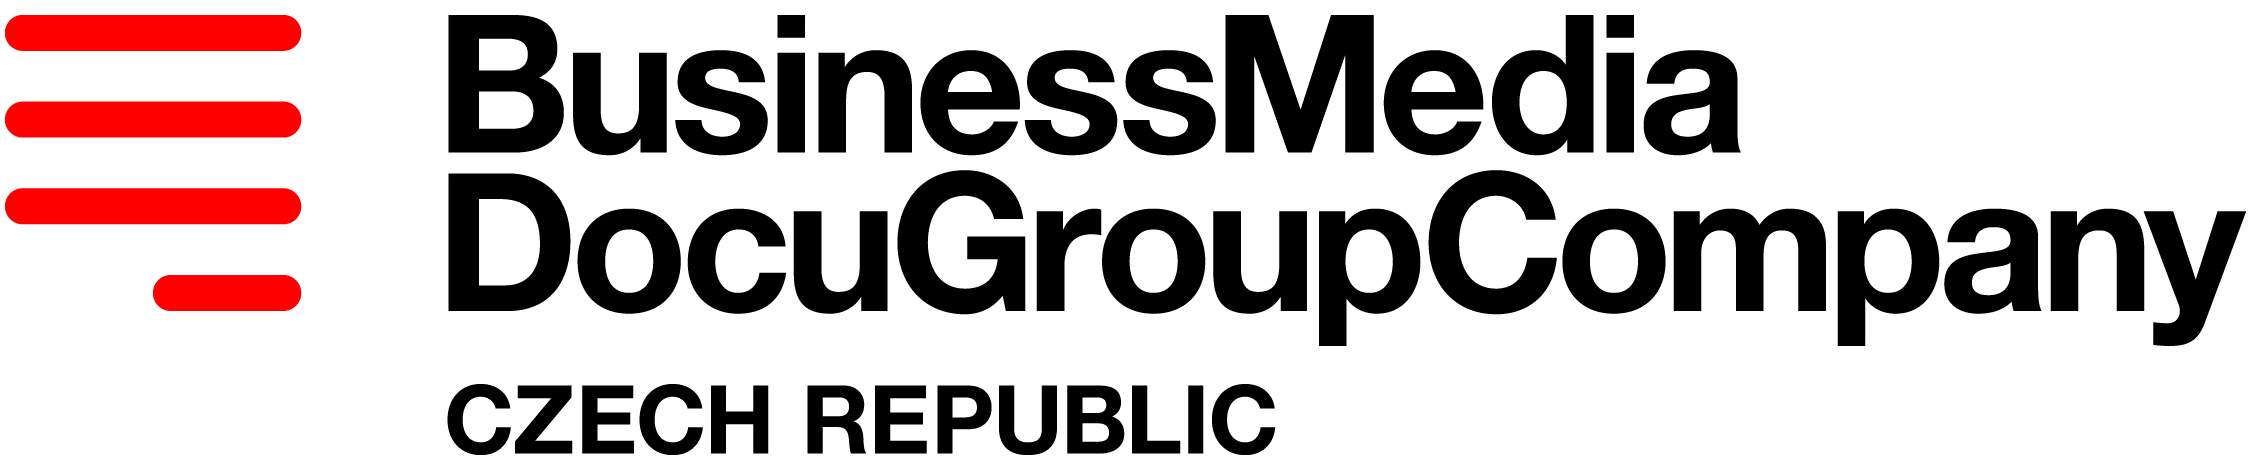 BusinessMedia DocuGroupCompany